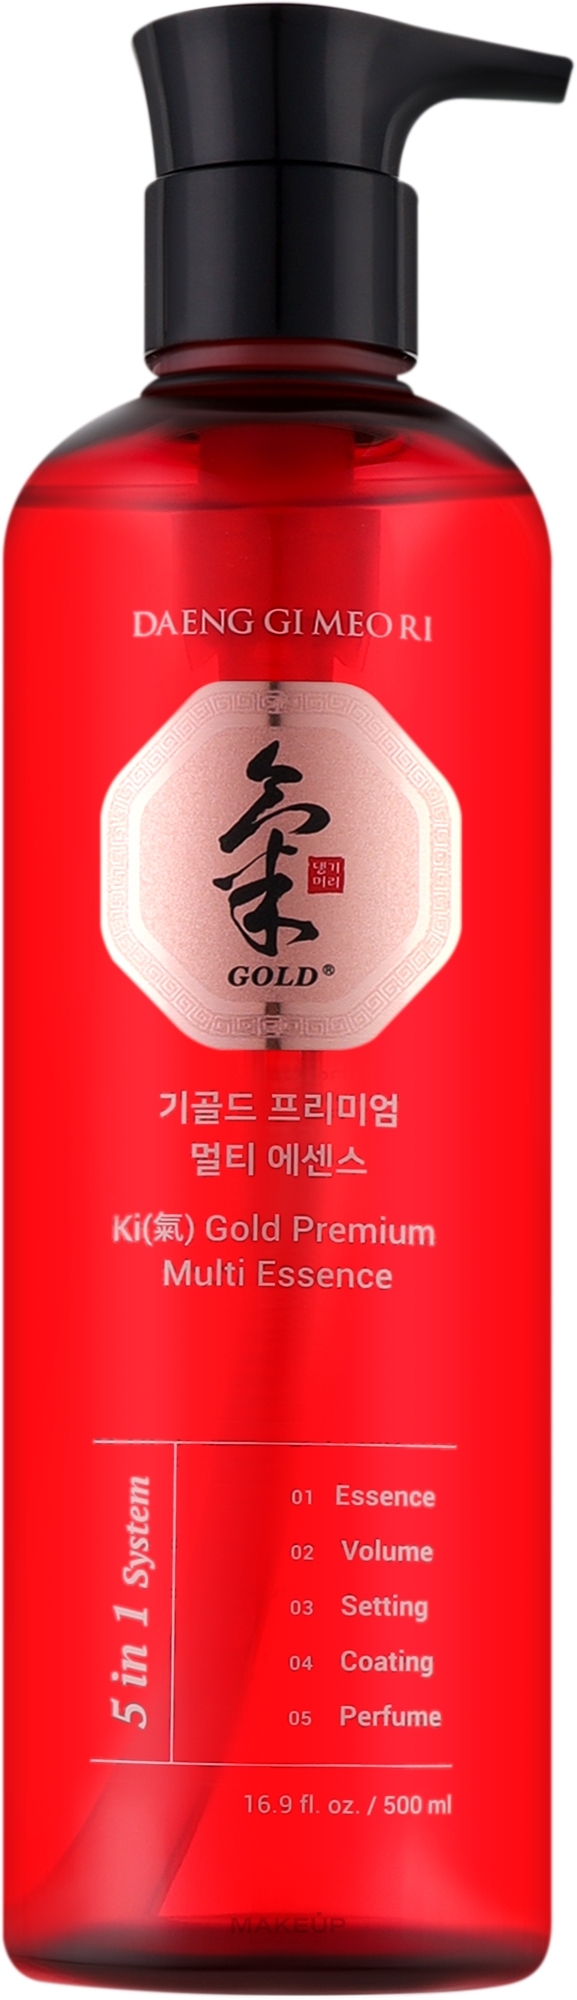 Мультиесенція для волосся - Daeng Gi Meo Ri Ki Gold Premium Multi Essence — фото 500ml